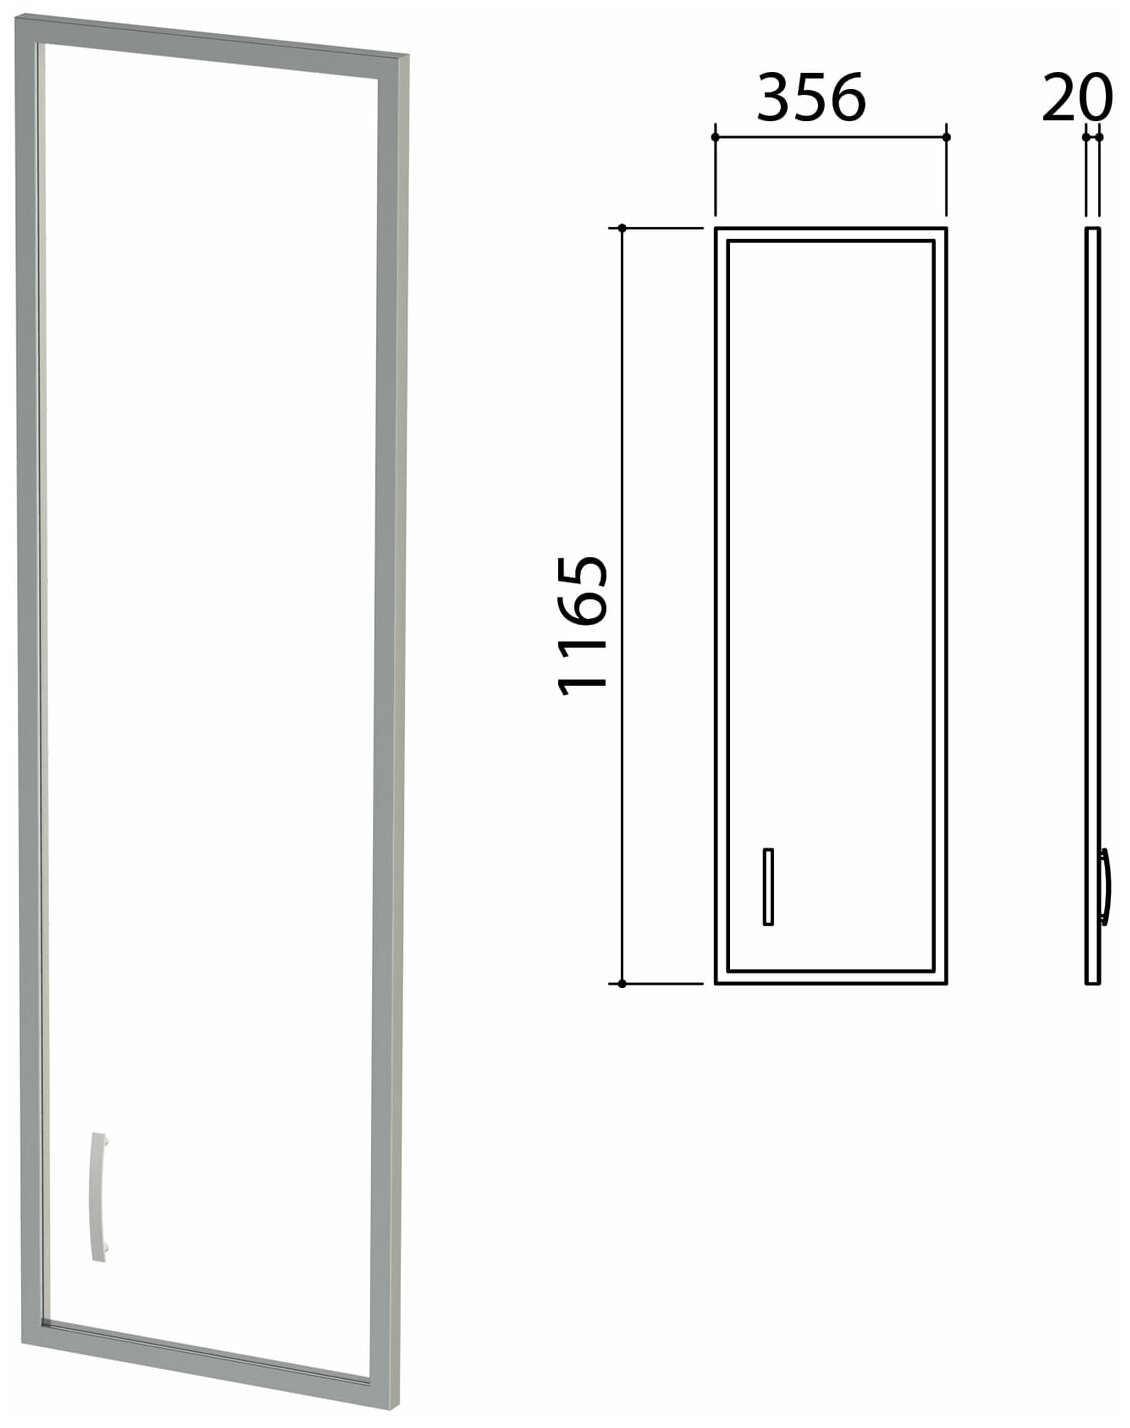 Дверь стекло в алюминиевой рамке "Приоритет", правая, 356х20х1165 мм, без фурнитуры, К-940 - 1 шт.